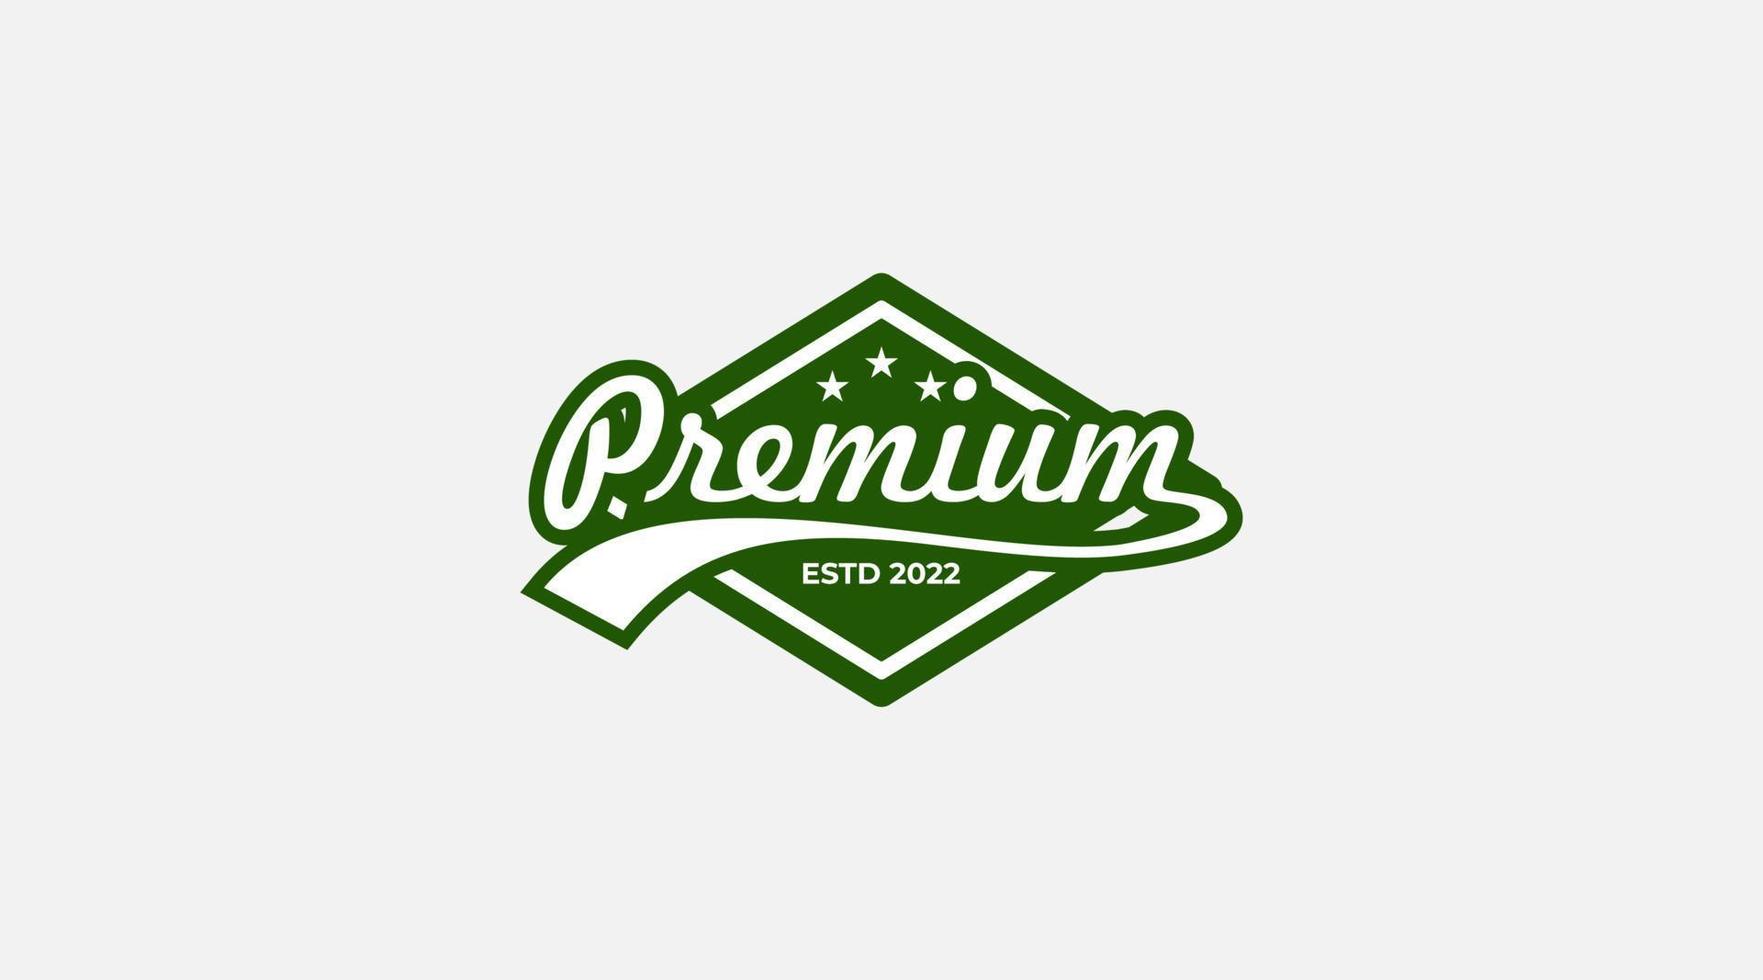 Premium monogram Logo design template illustration vector